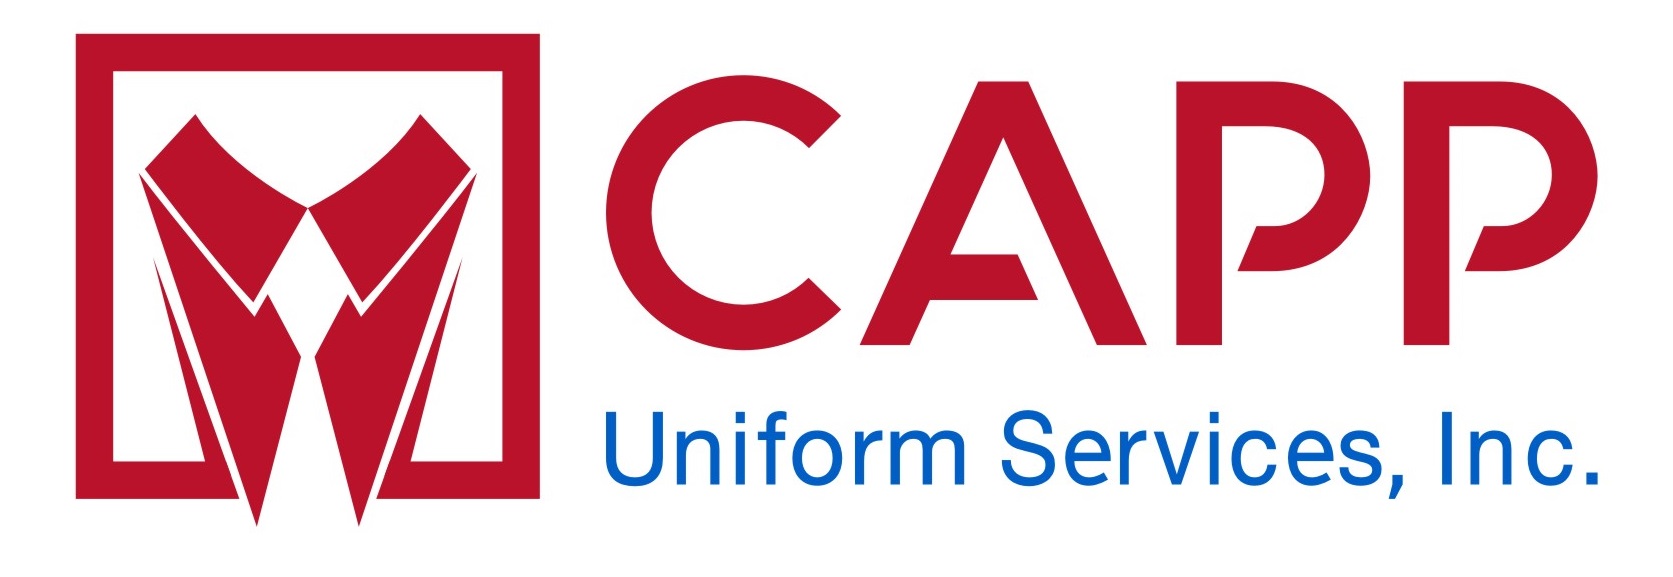 CAPP Uniform Services, Inc.